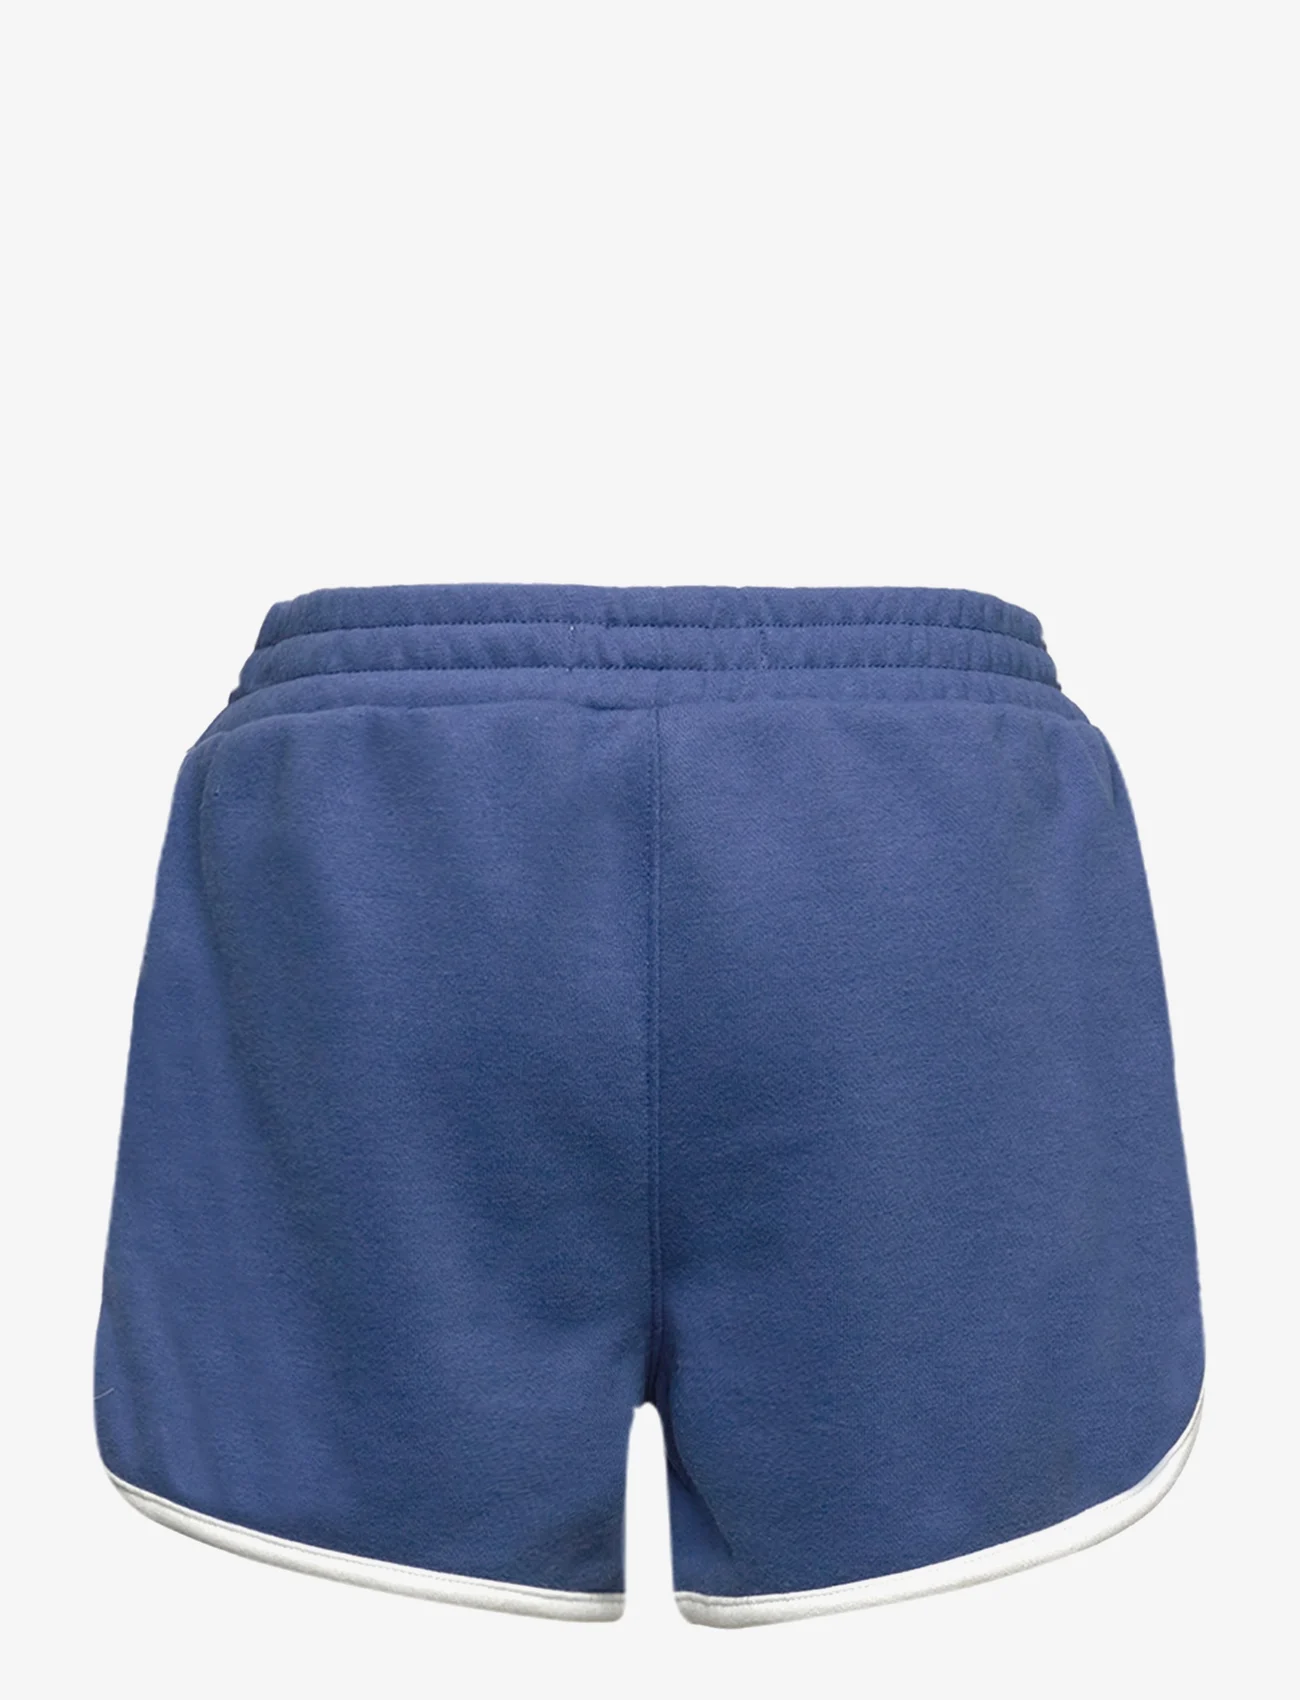 Levi's - Levi's Dolphin Shorts - collegeshortsit - blue - 1